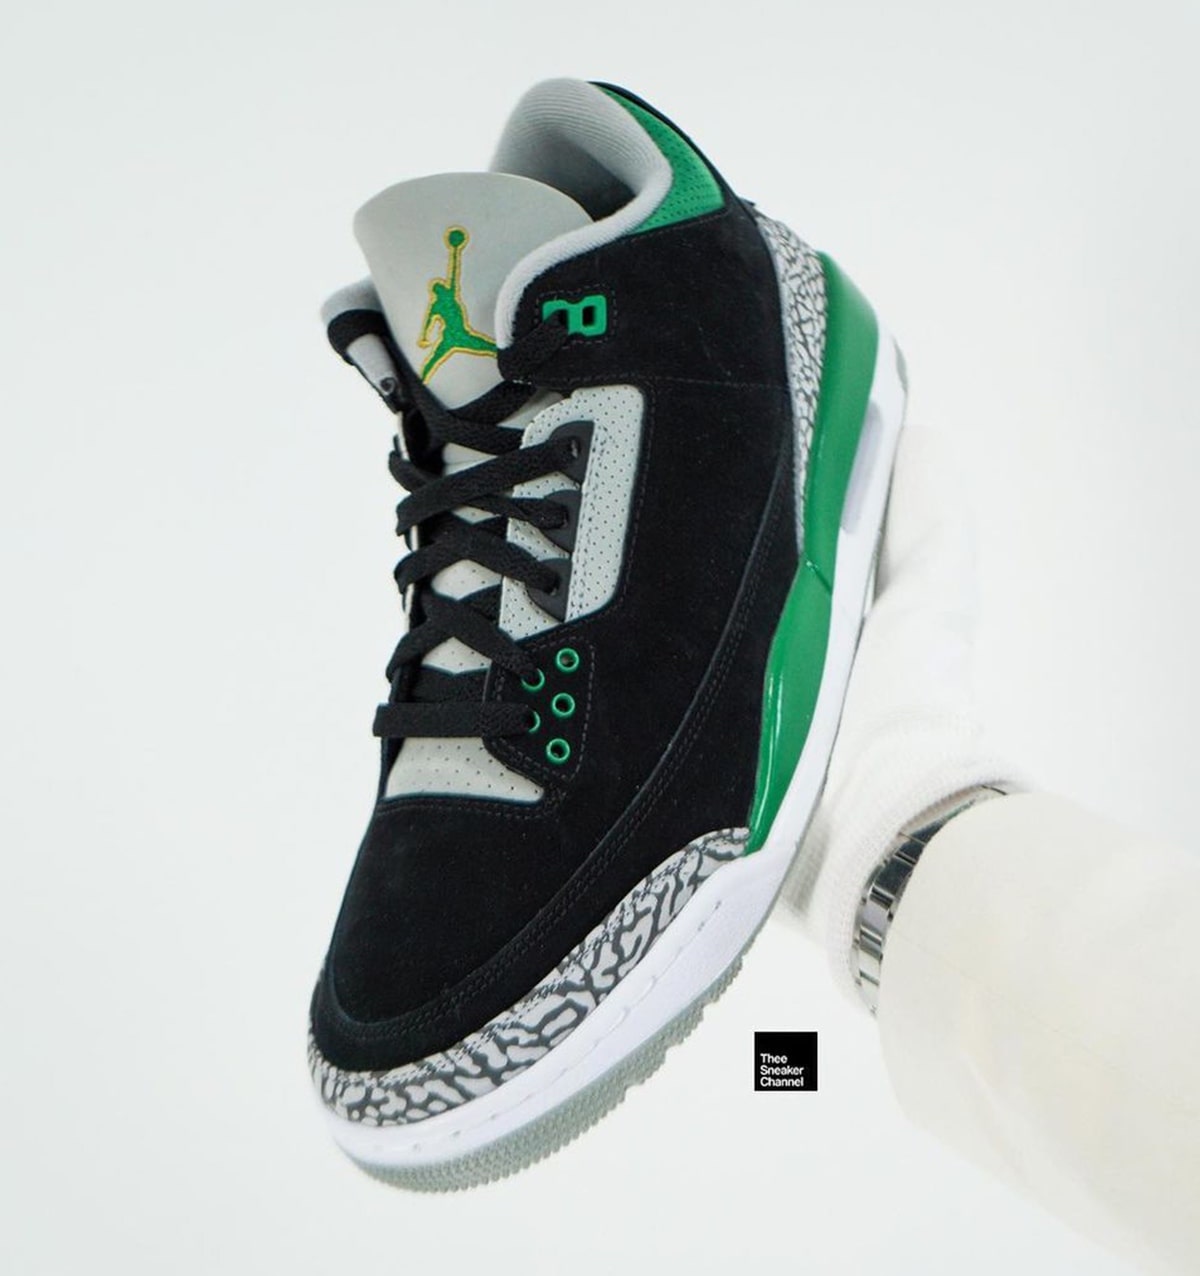 Air Jordan 3 Pine Green CT8532-030 Release Date